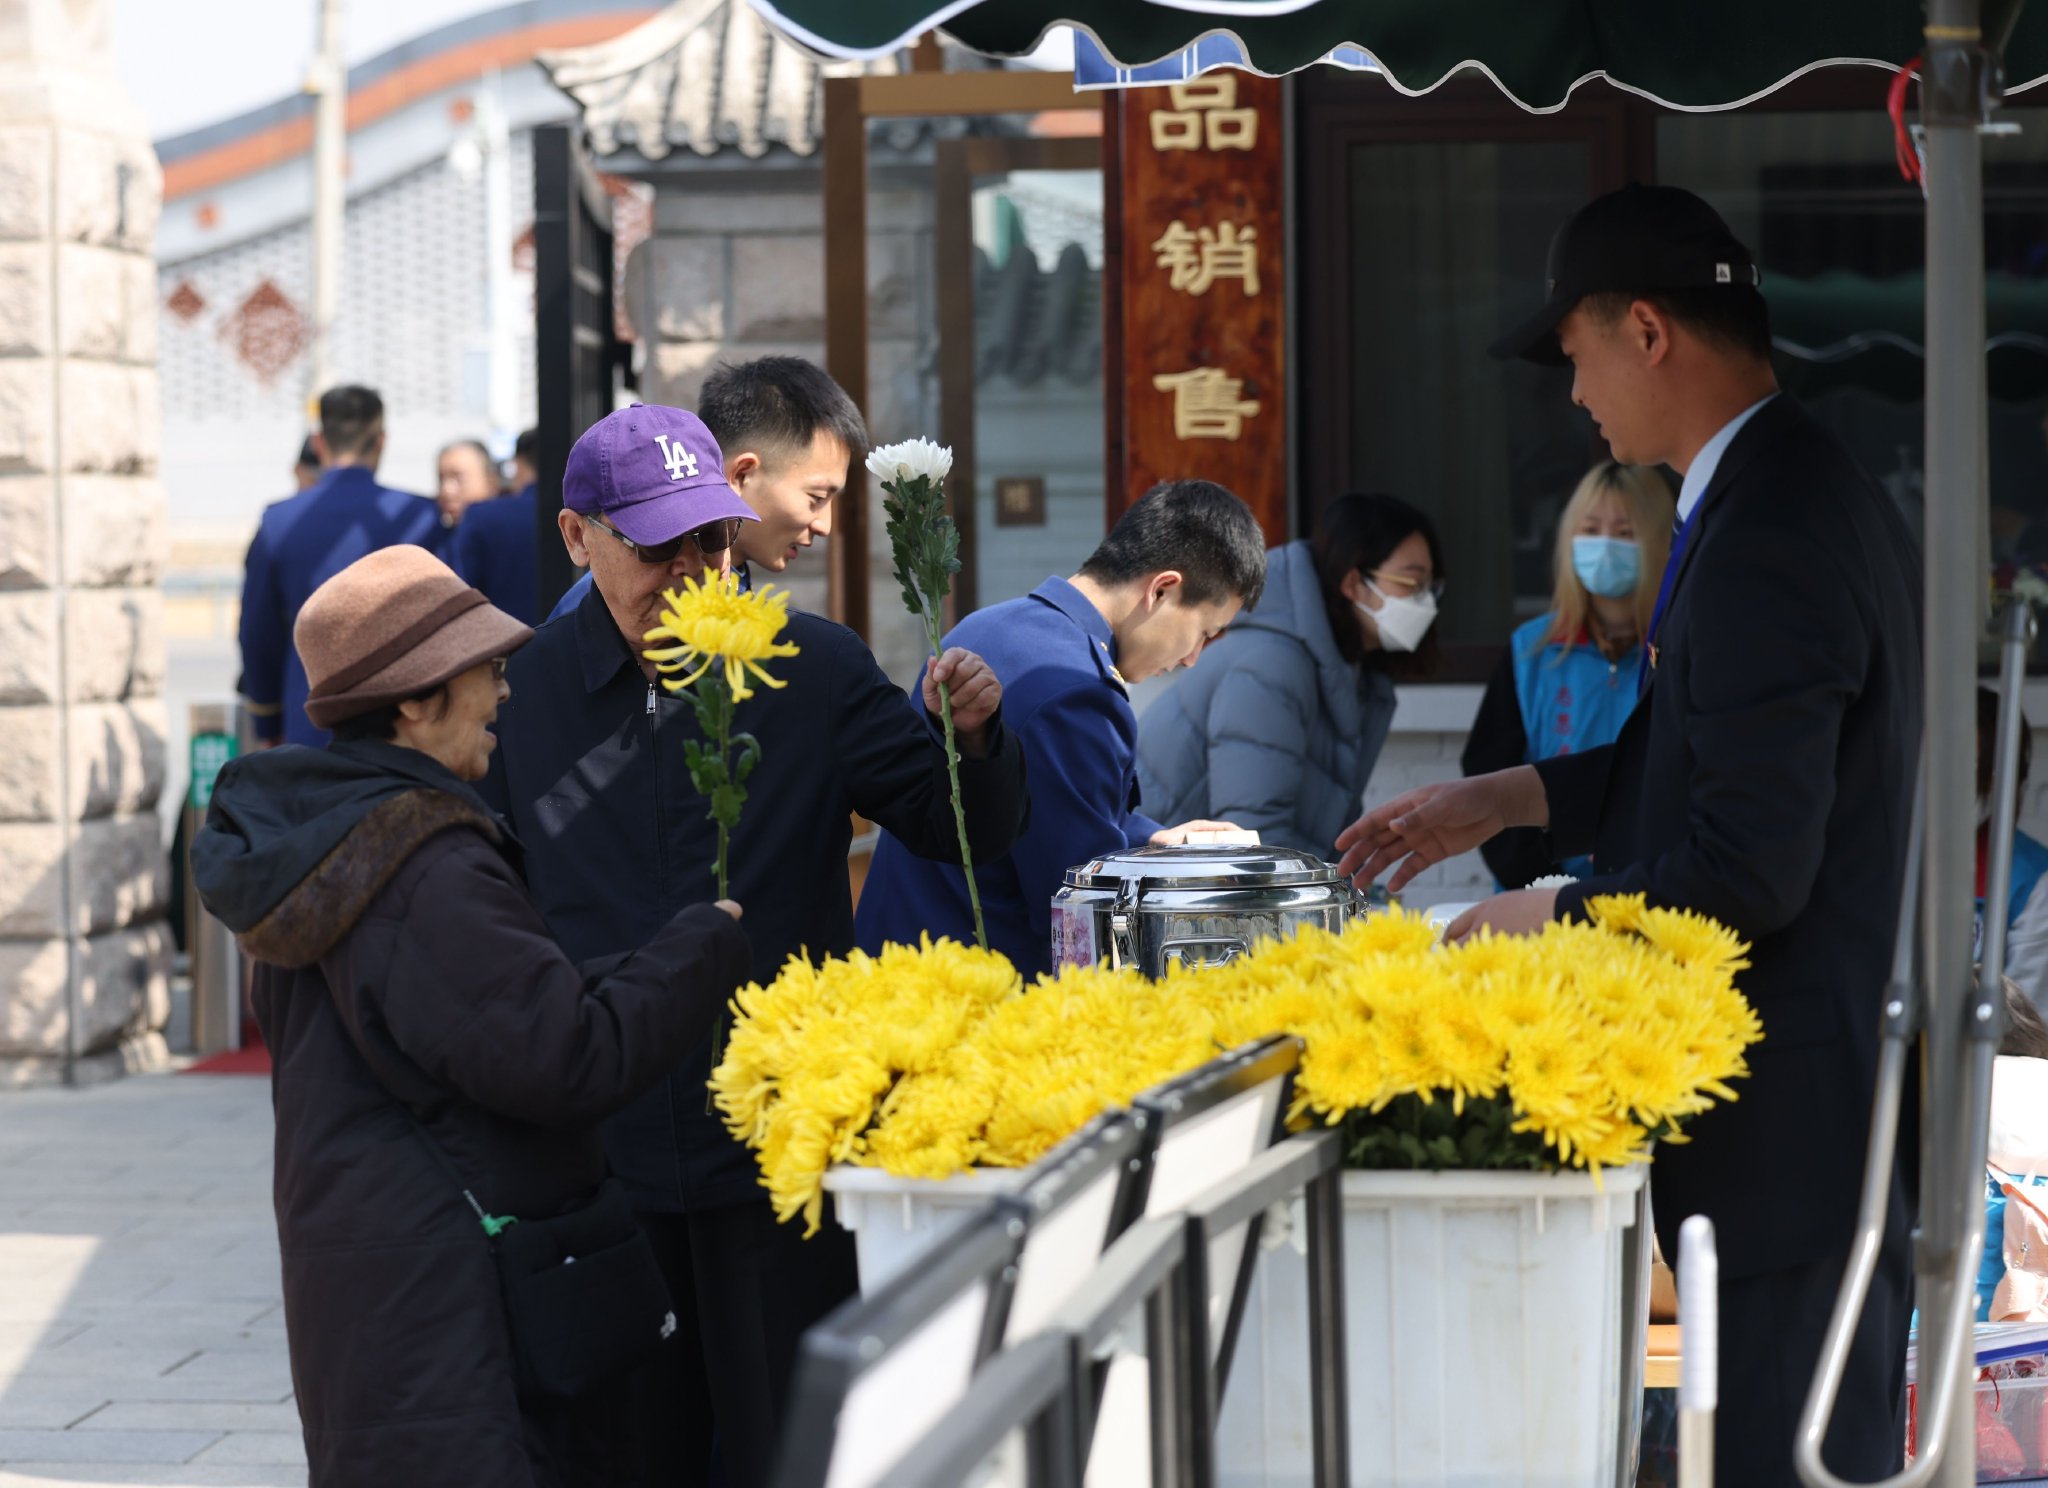 萬安公墓向前來祭掃的市民免費發放鮮花。新京報記者 王貴彬 攝